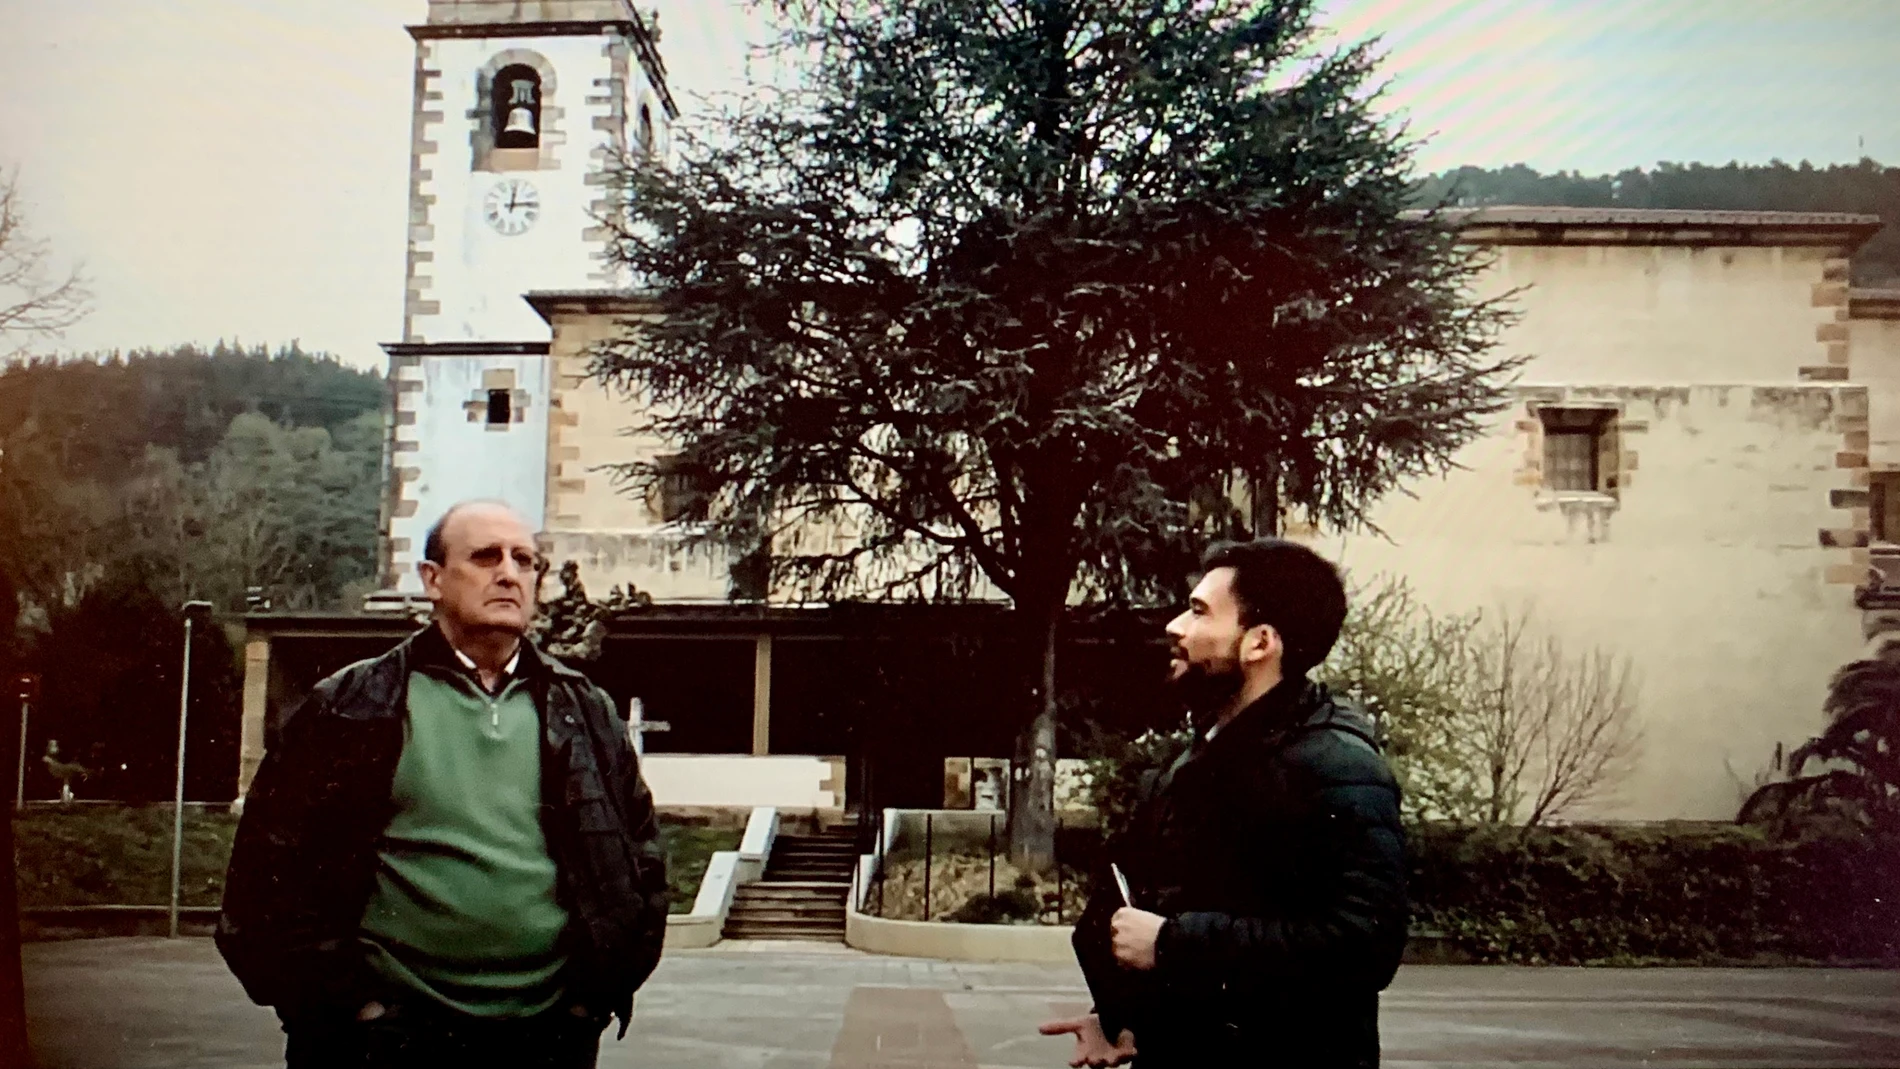 El párroco de Lemona entrevistado en el documental "Bajo el silencio" de Iñaki Arteta